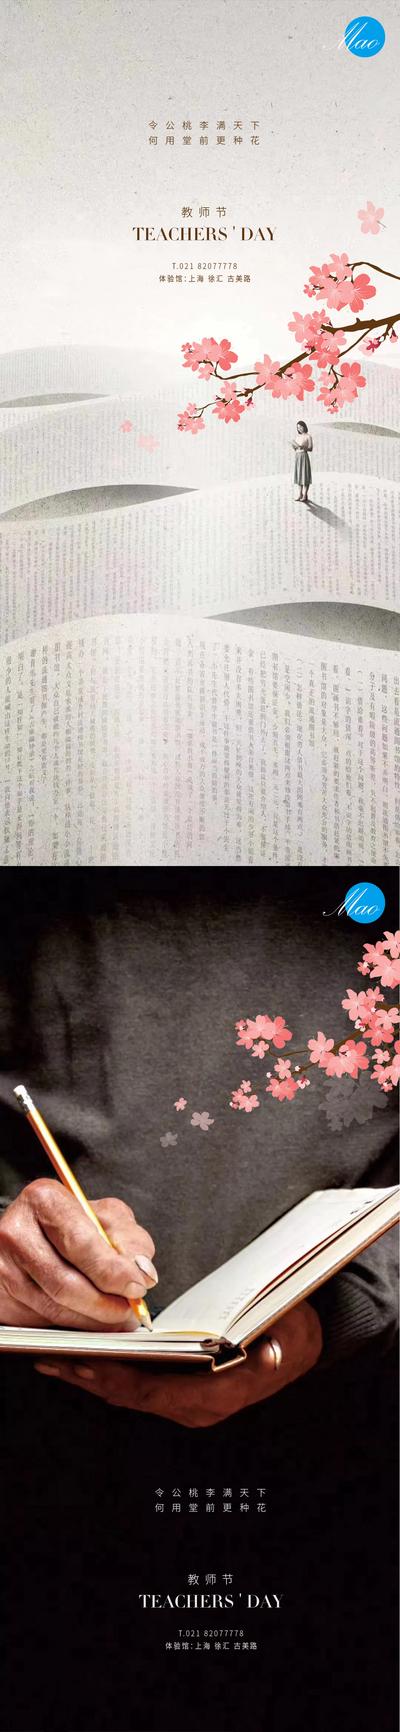 南门网 海报 公历节日 教师节 试卷 书本 樱花 桃花 知识 创意